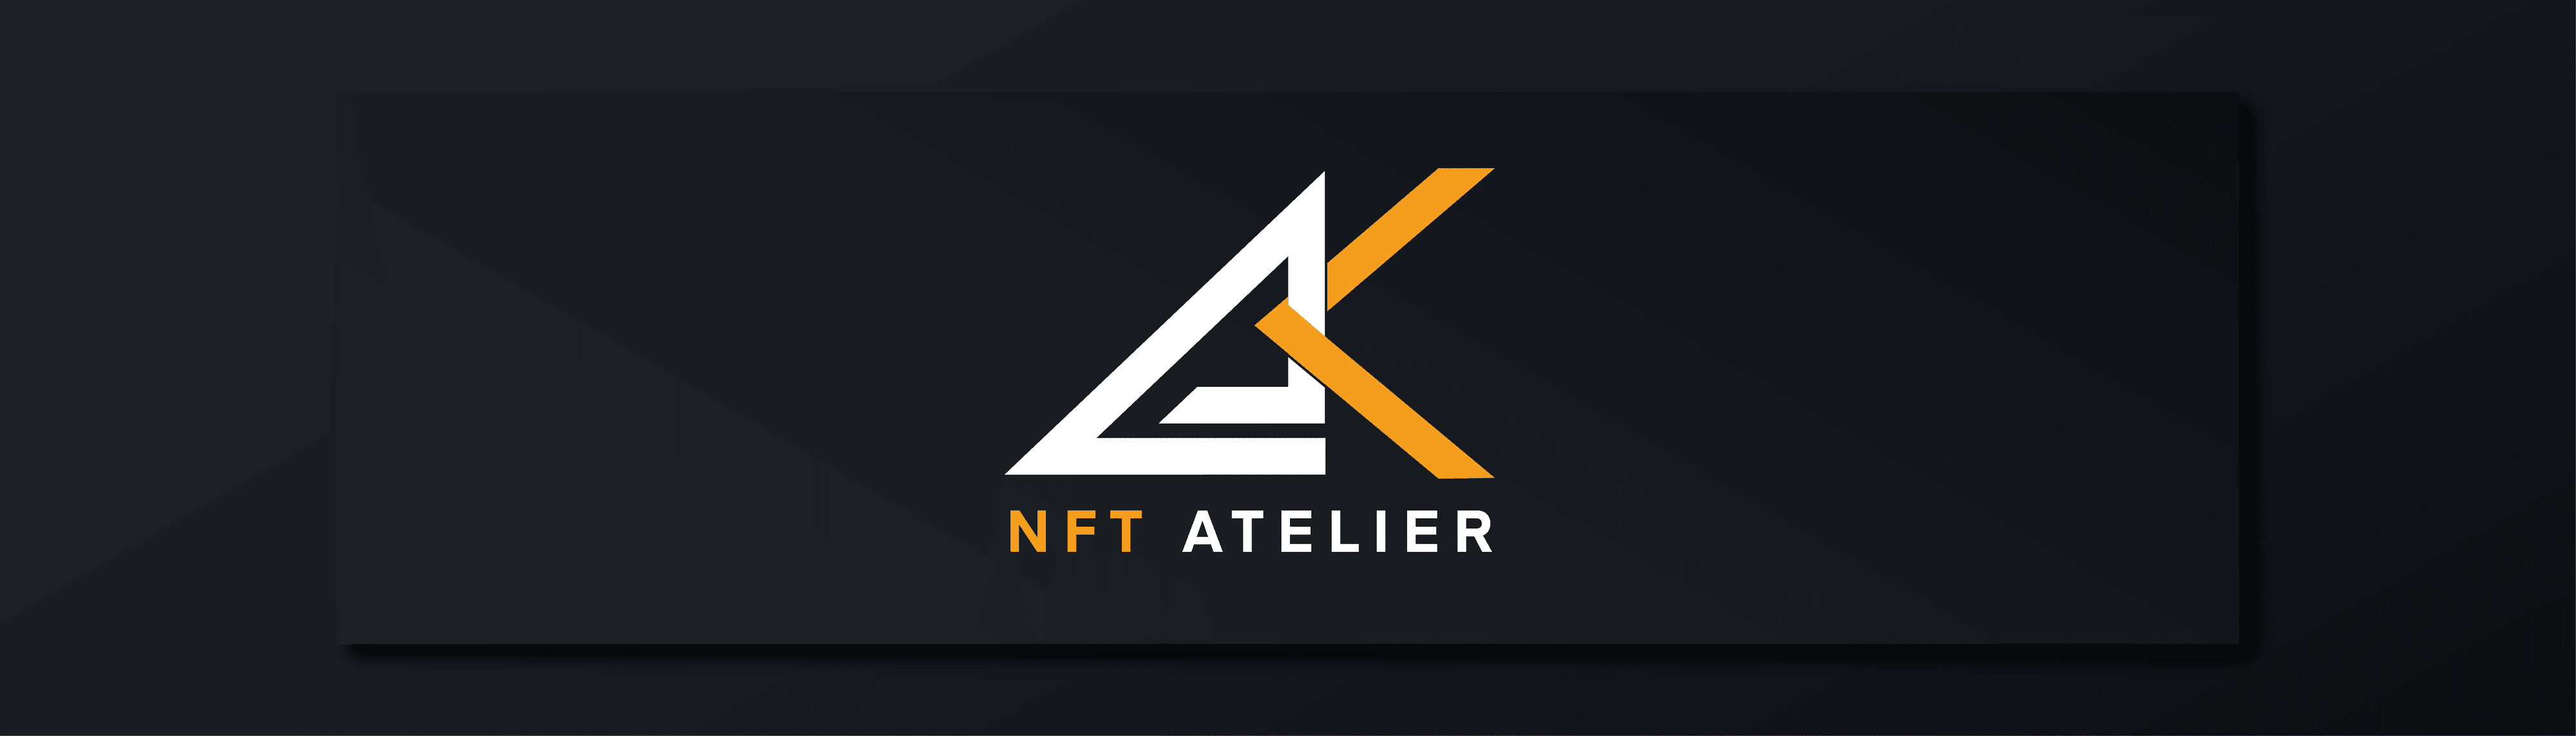 ak-nft-atelier banner